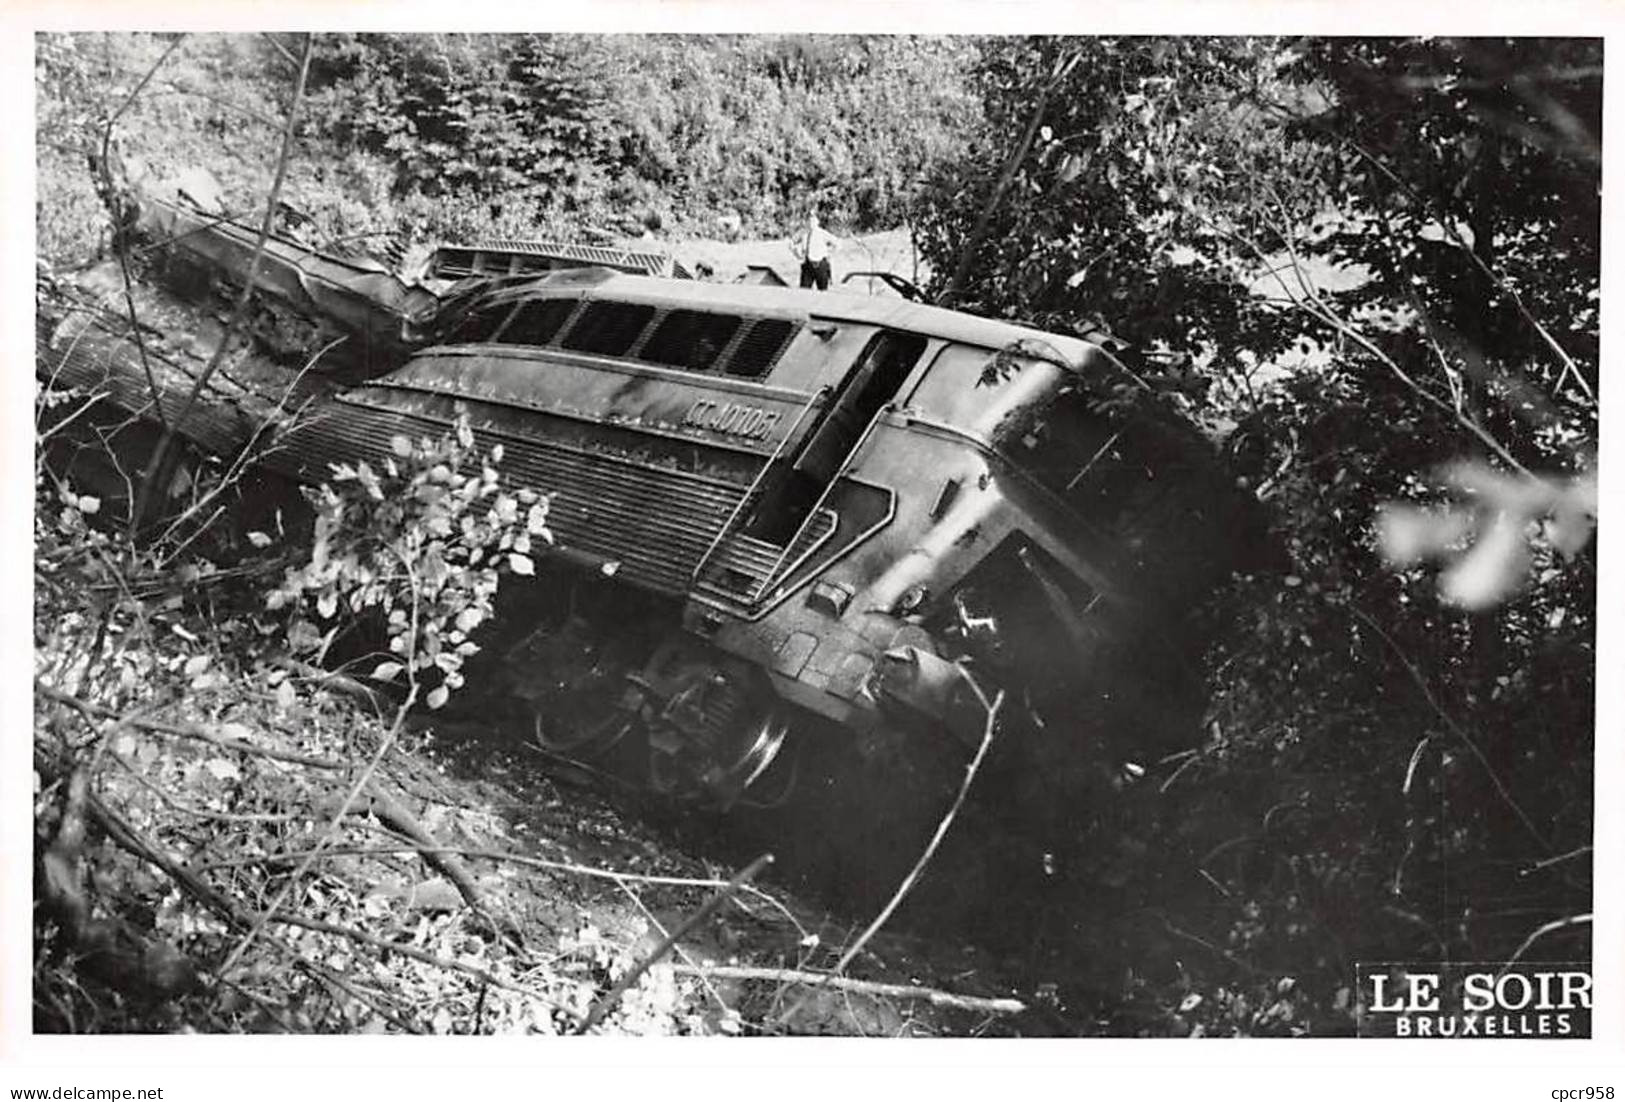 Belgique - N°85924 - HALLE - Accident De Train 1969, La CC 40106 En Tête - Le Soir Bruxelles - Photo Souple - Halle